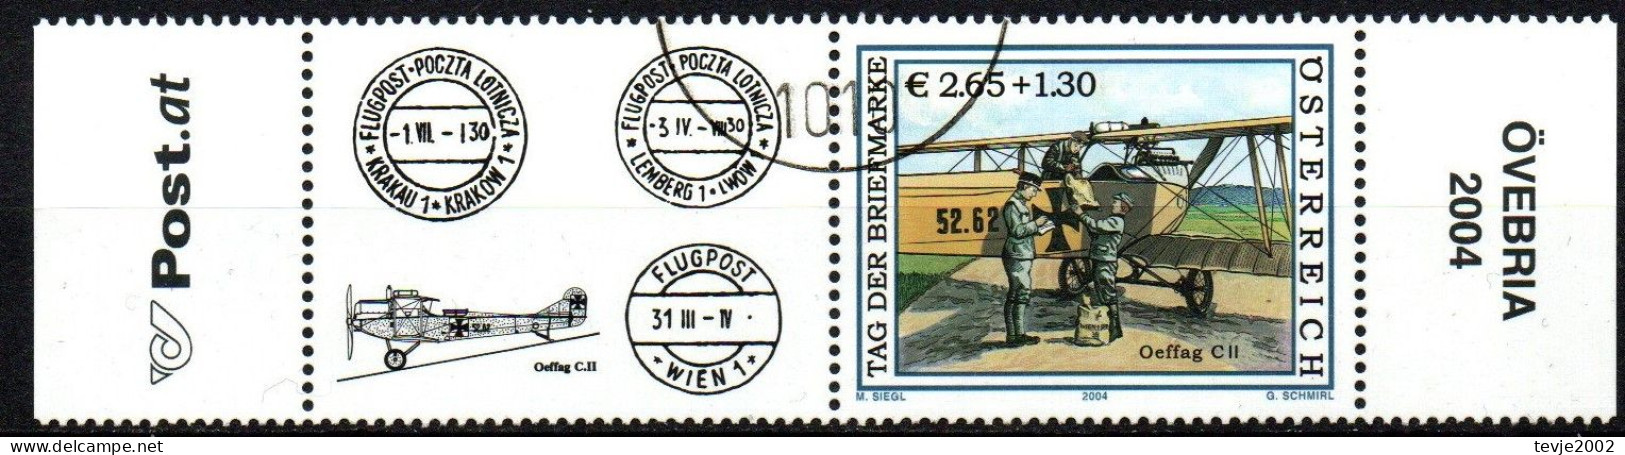 Österreich 2004 - Mi.Nr. 2482 Zf - Gestempelt Used - Gebraucht